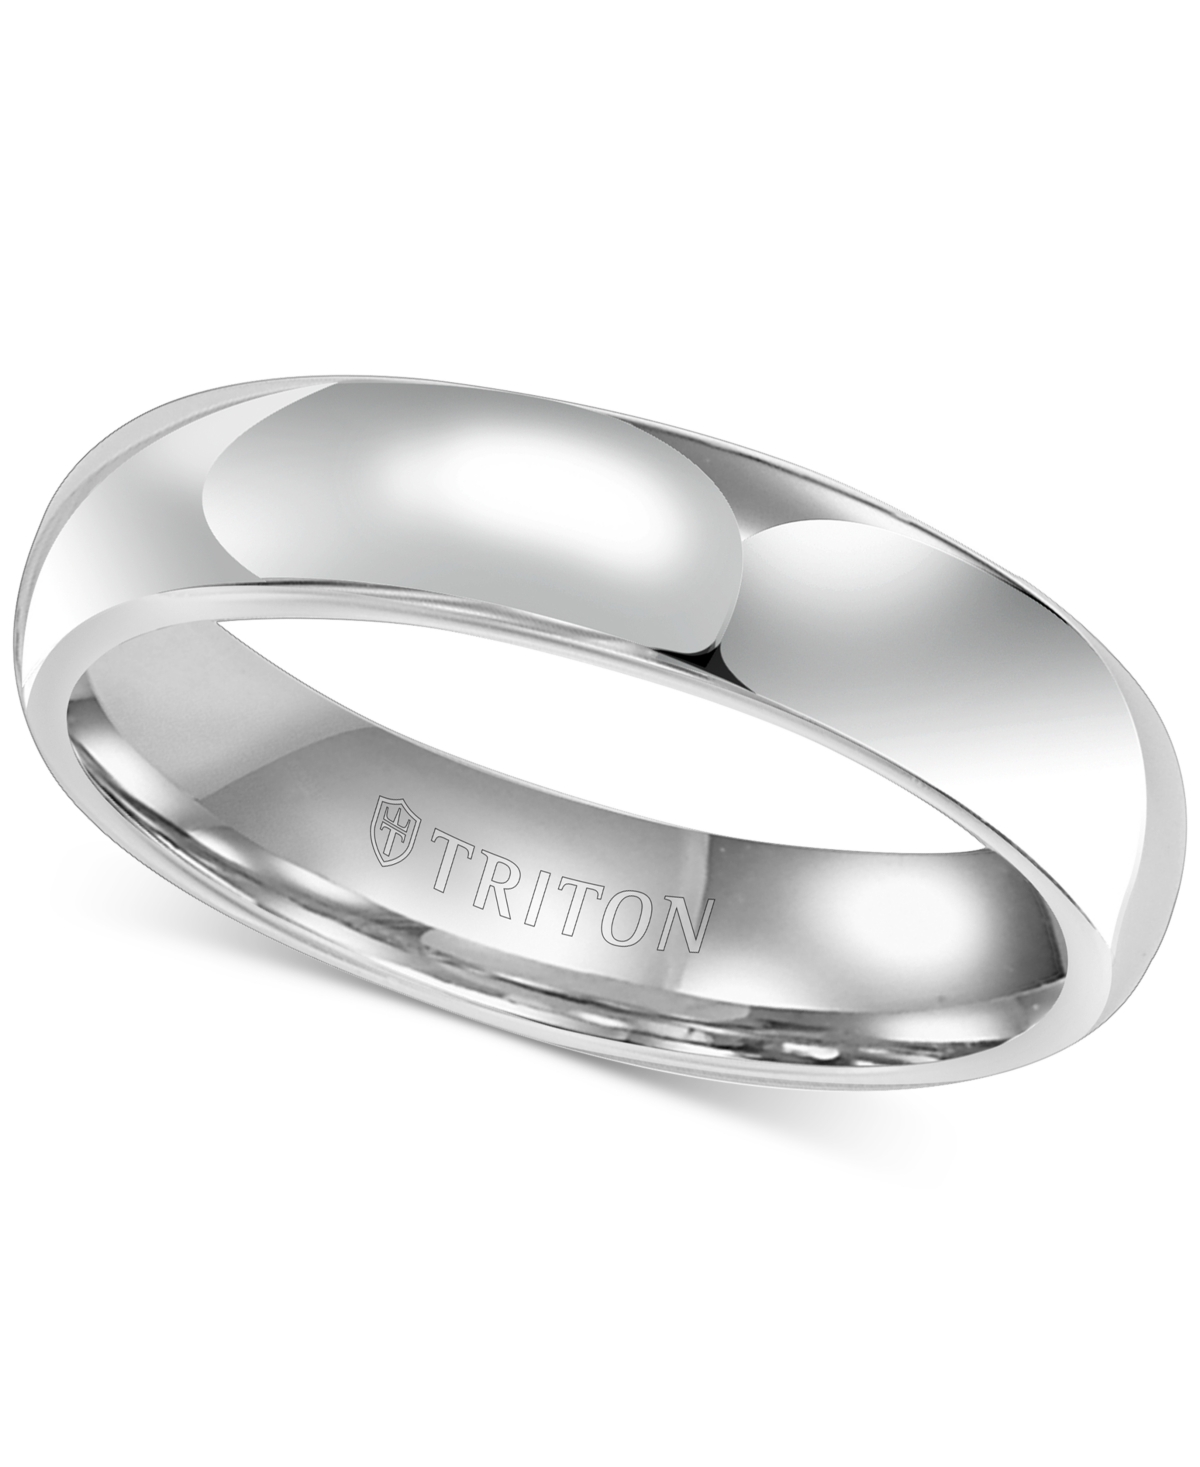 Men's White Tungsten Carbide Ring, Dome Wedding Band (5mm) - Tungsten